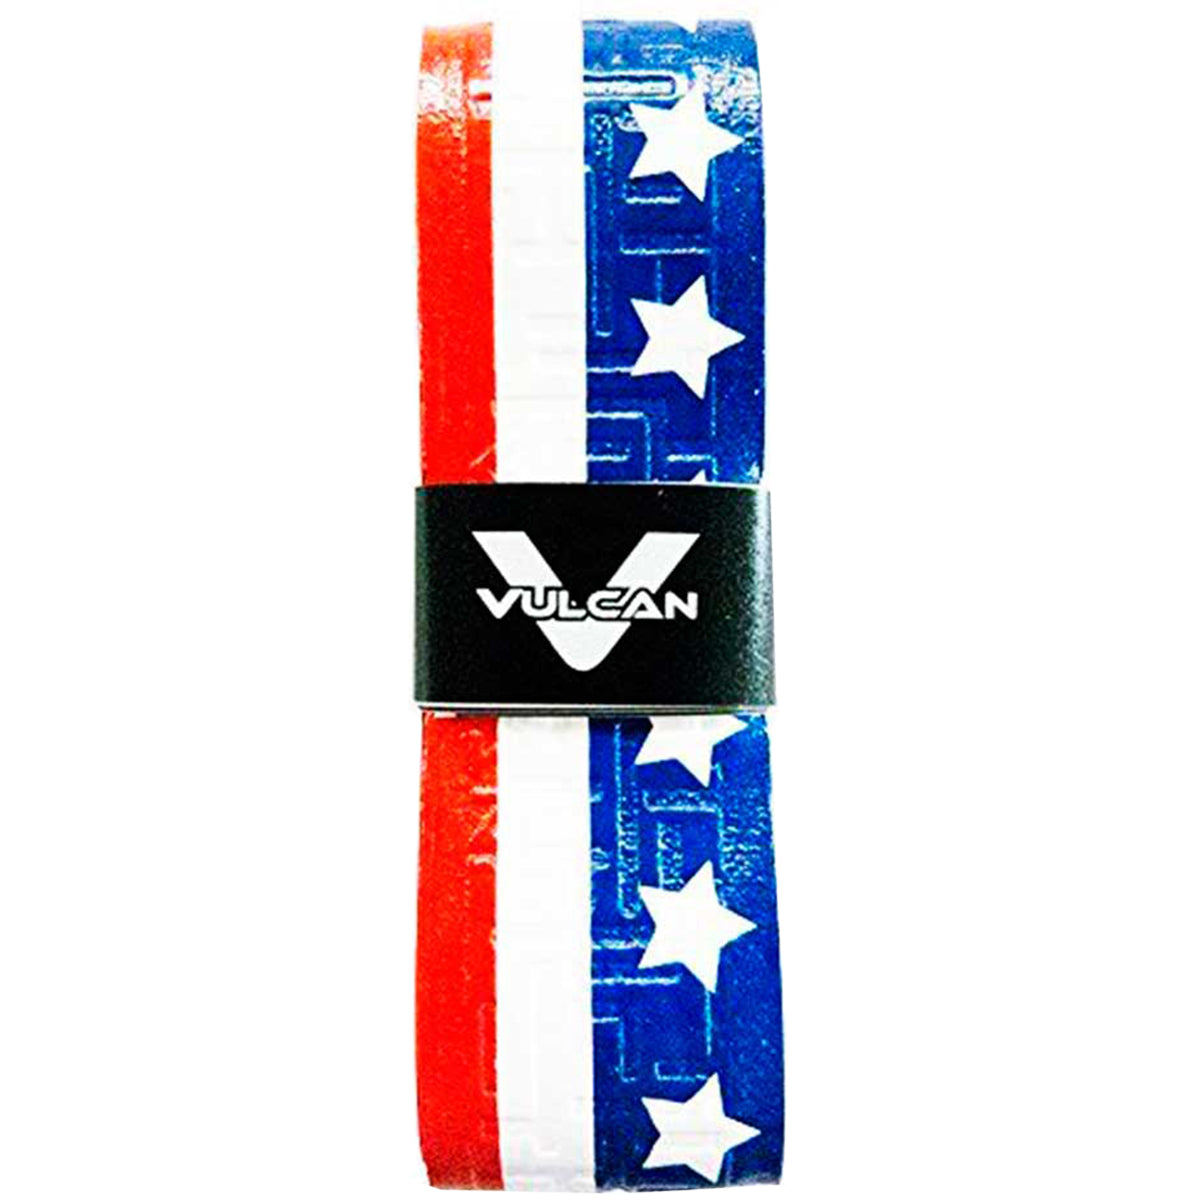 Vulcan USA Series Ultralight Advanced Polymer Bat Grip Tape Wrap Vulcan